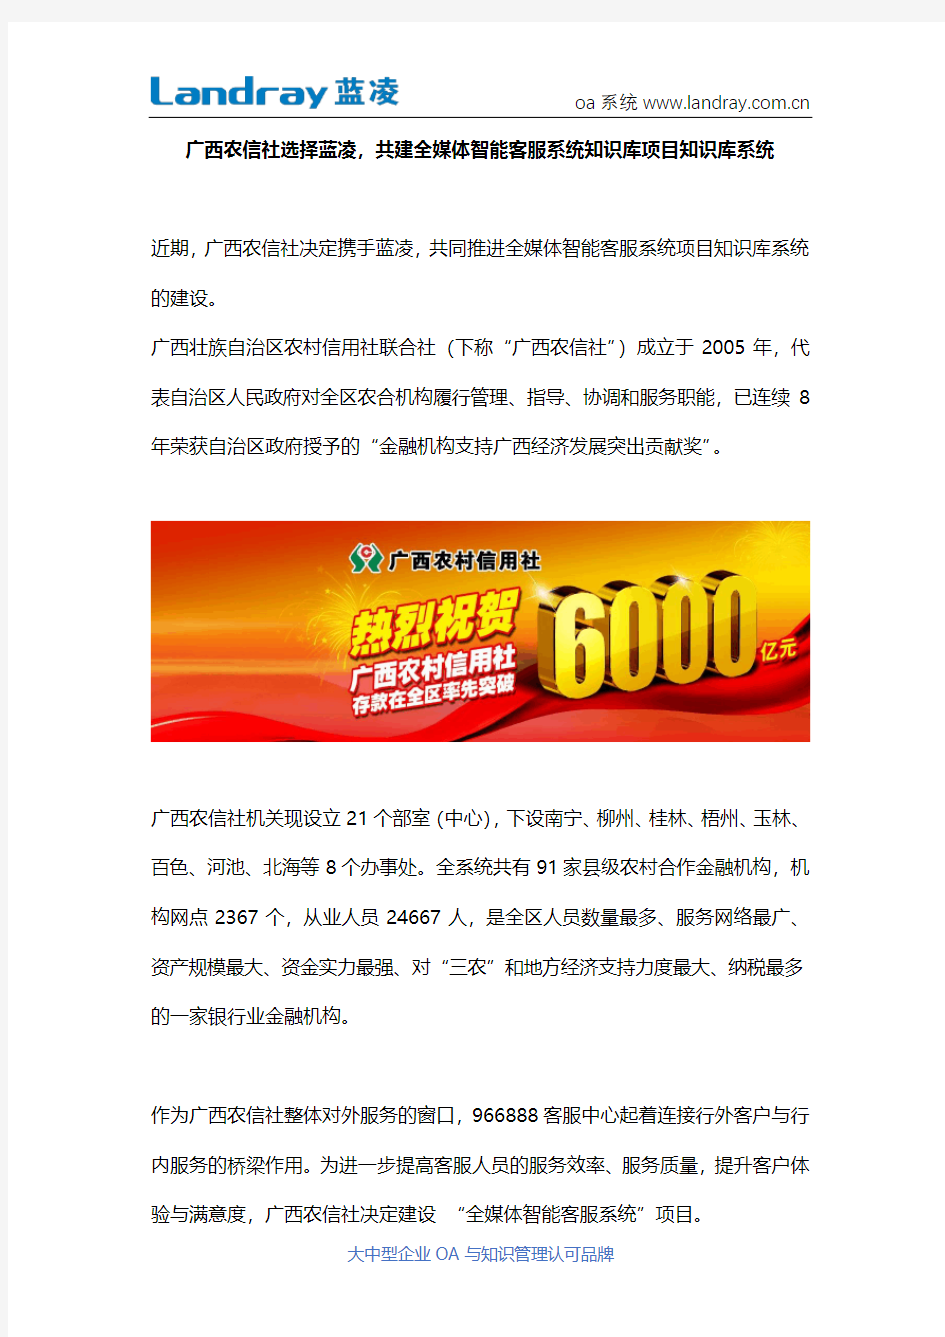 广西农信社选择蓝凌知识管理平台,共建全媒体智能客服系统